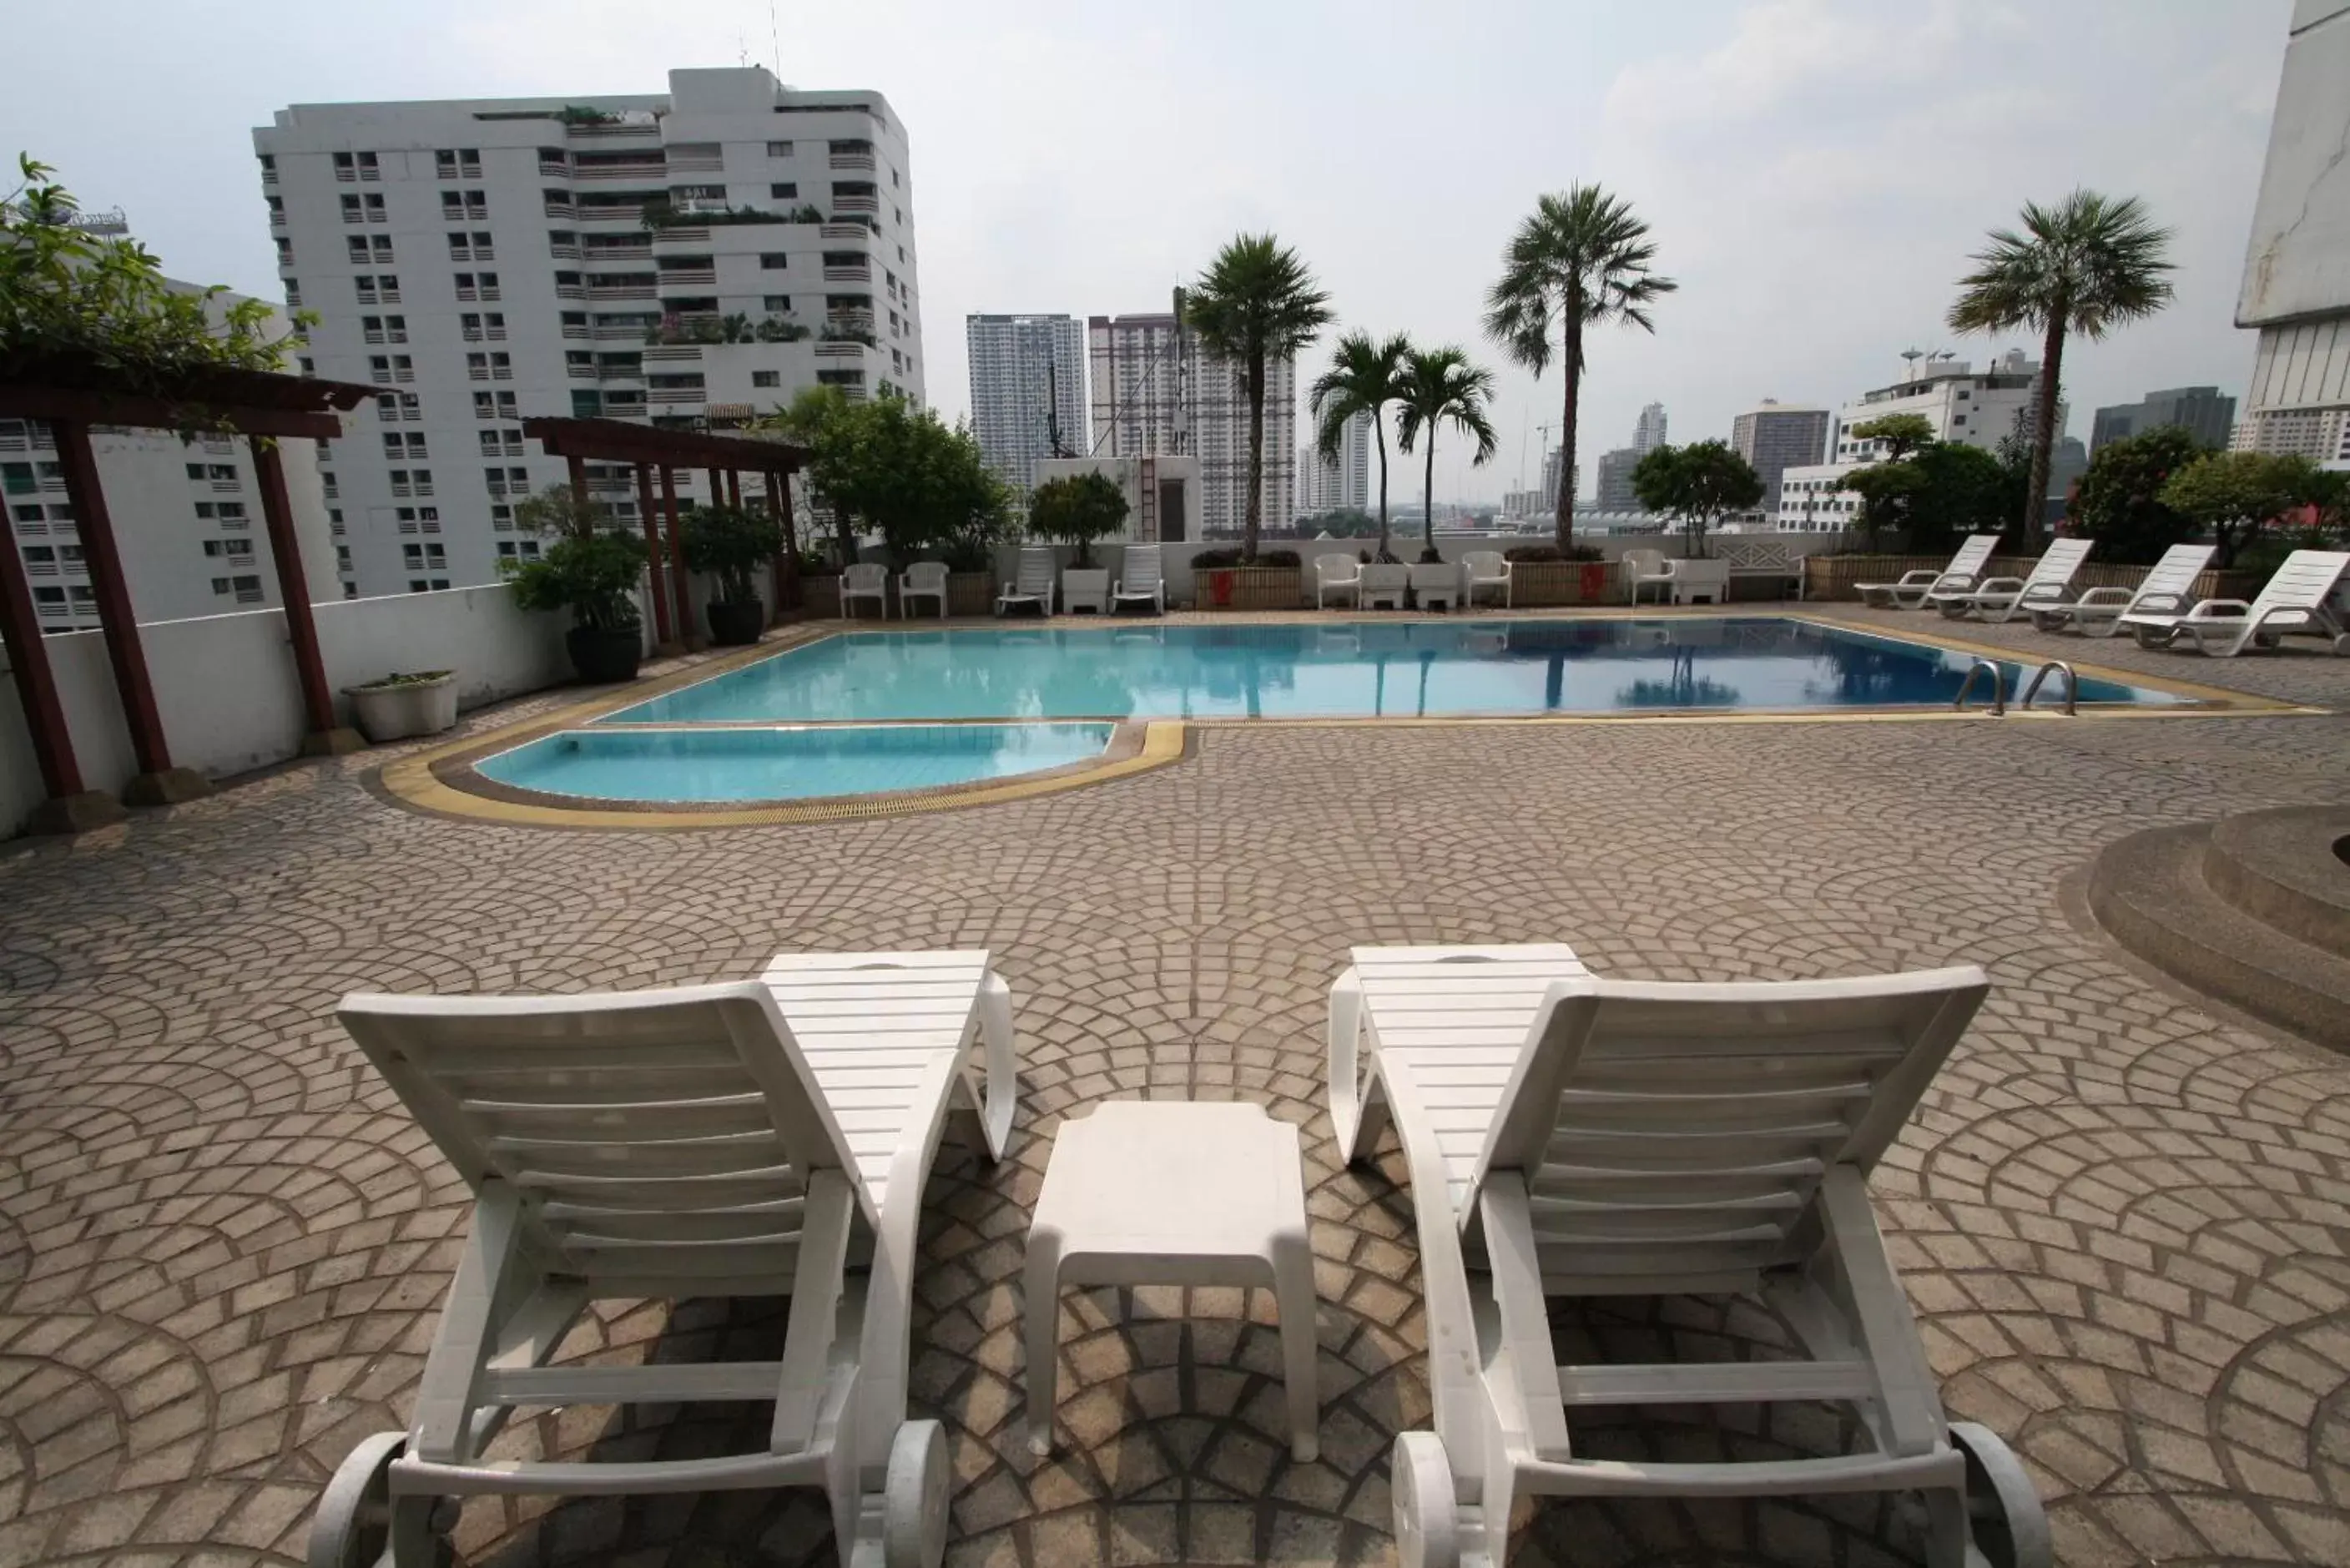 Swimming Pool in Baiyoke Suite Hotel